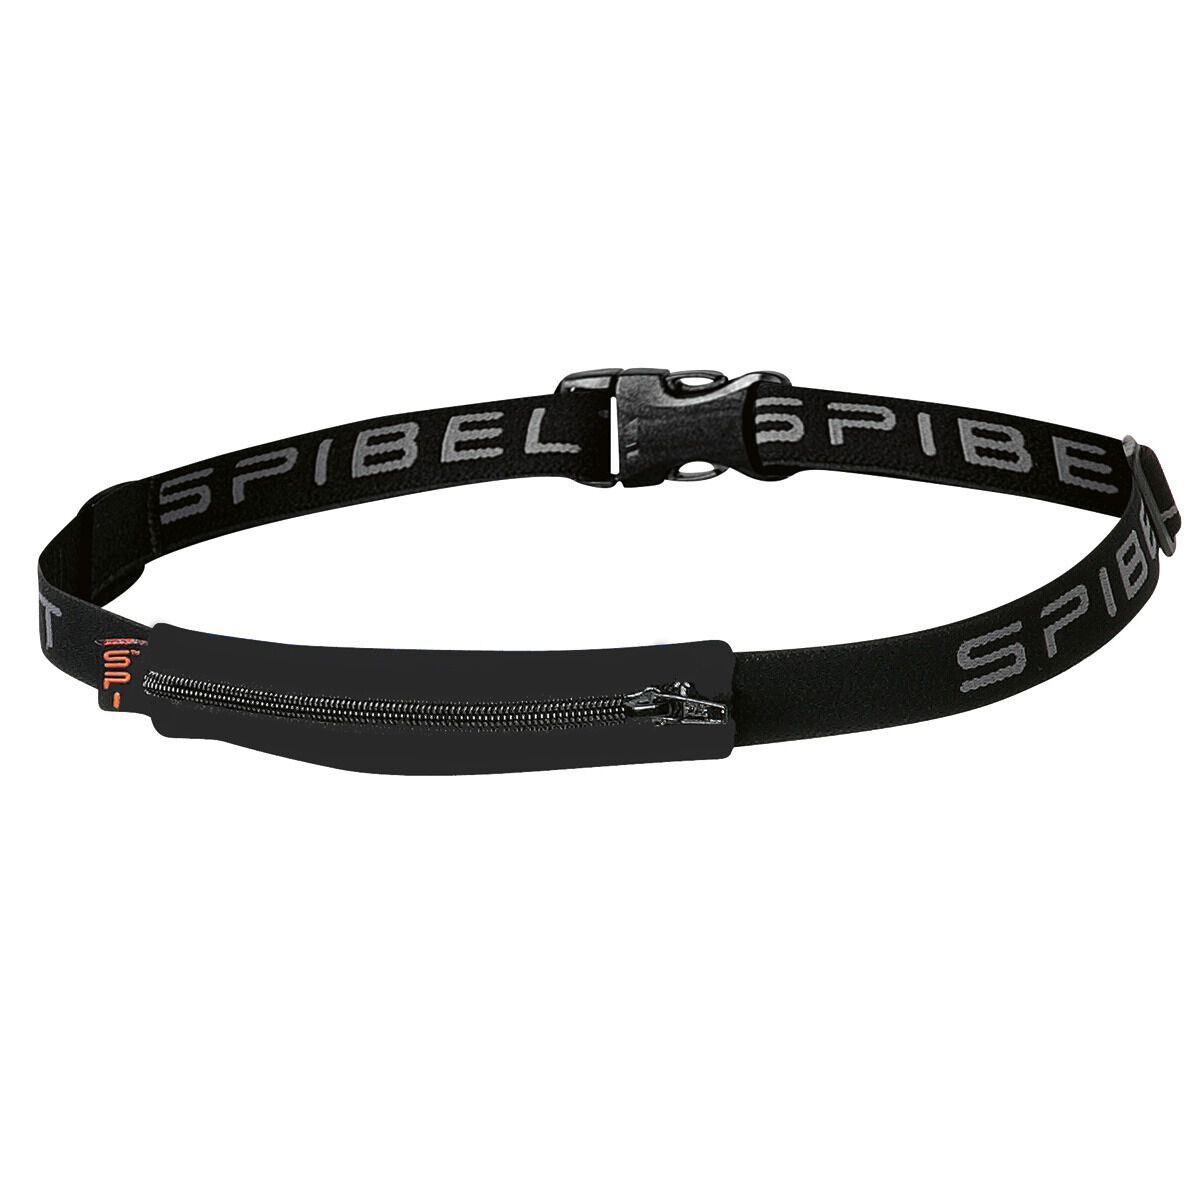 Spibelt Running Belt OSFA Black / Black 